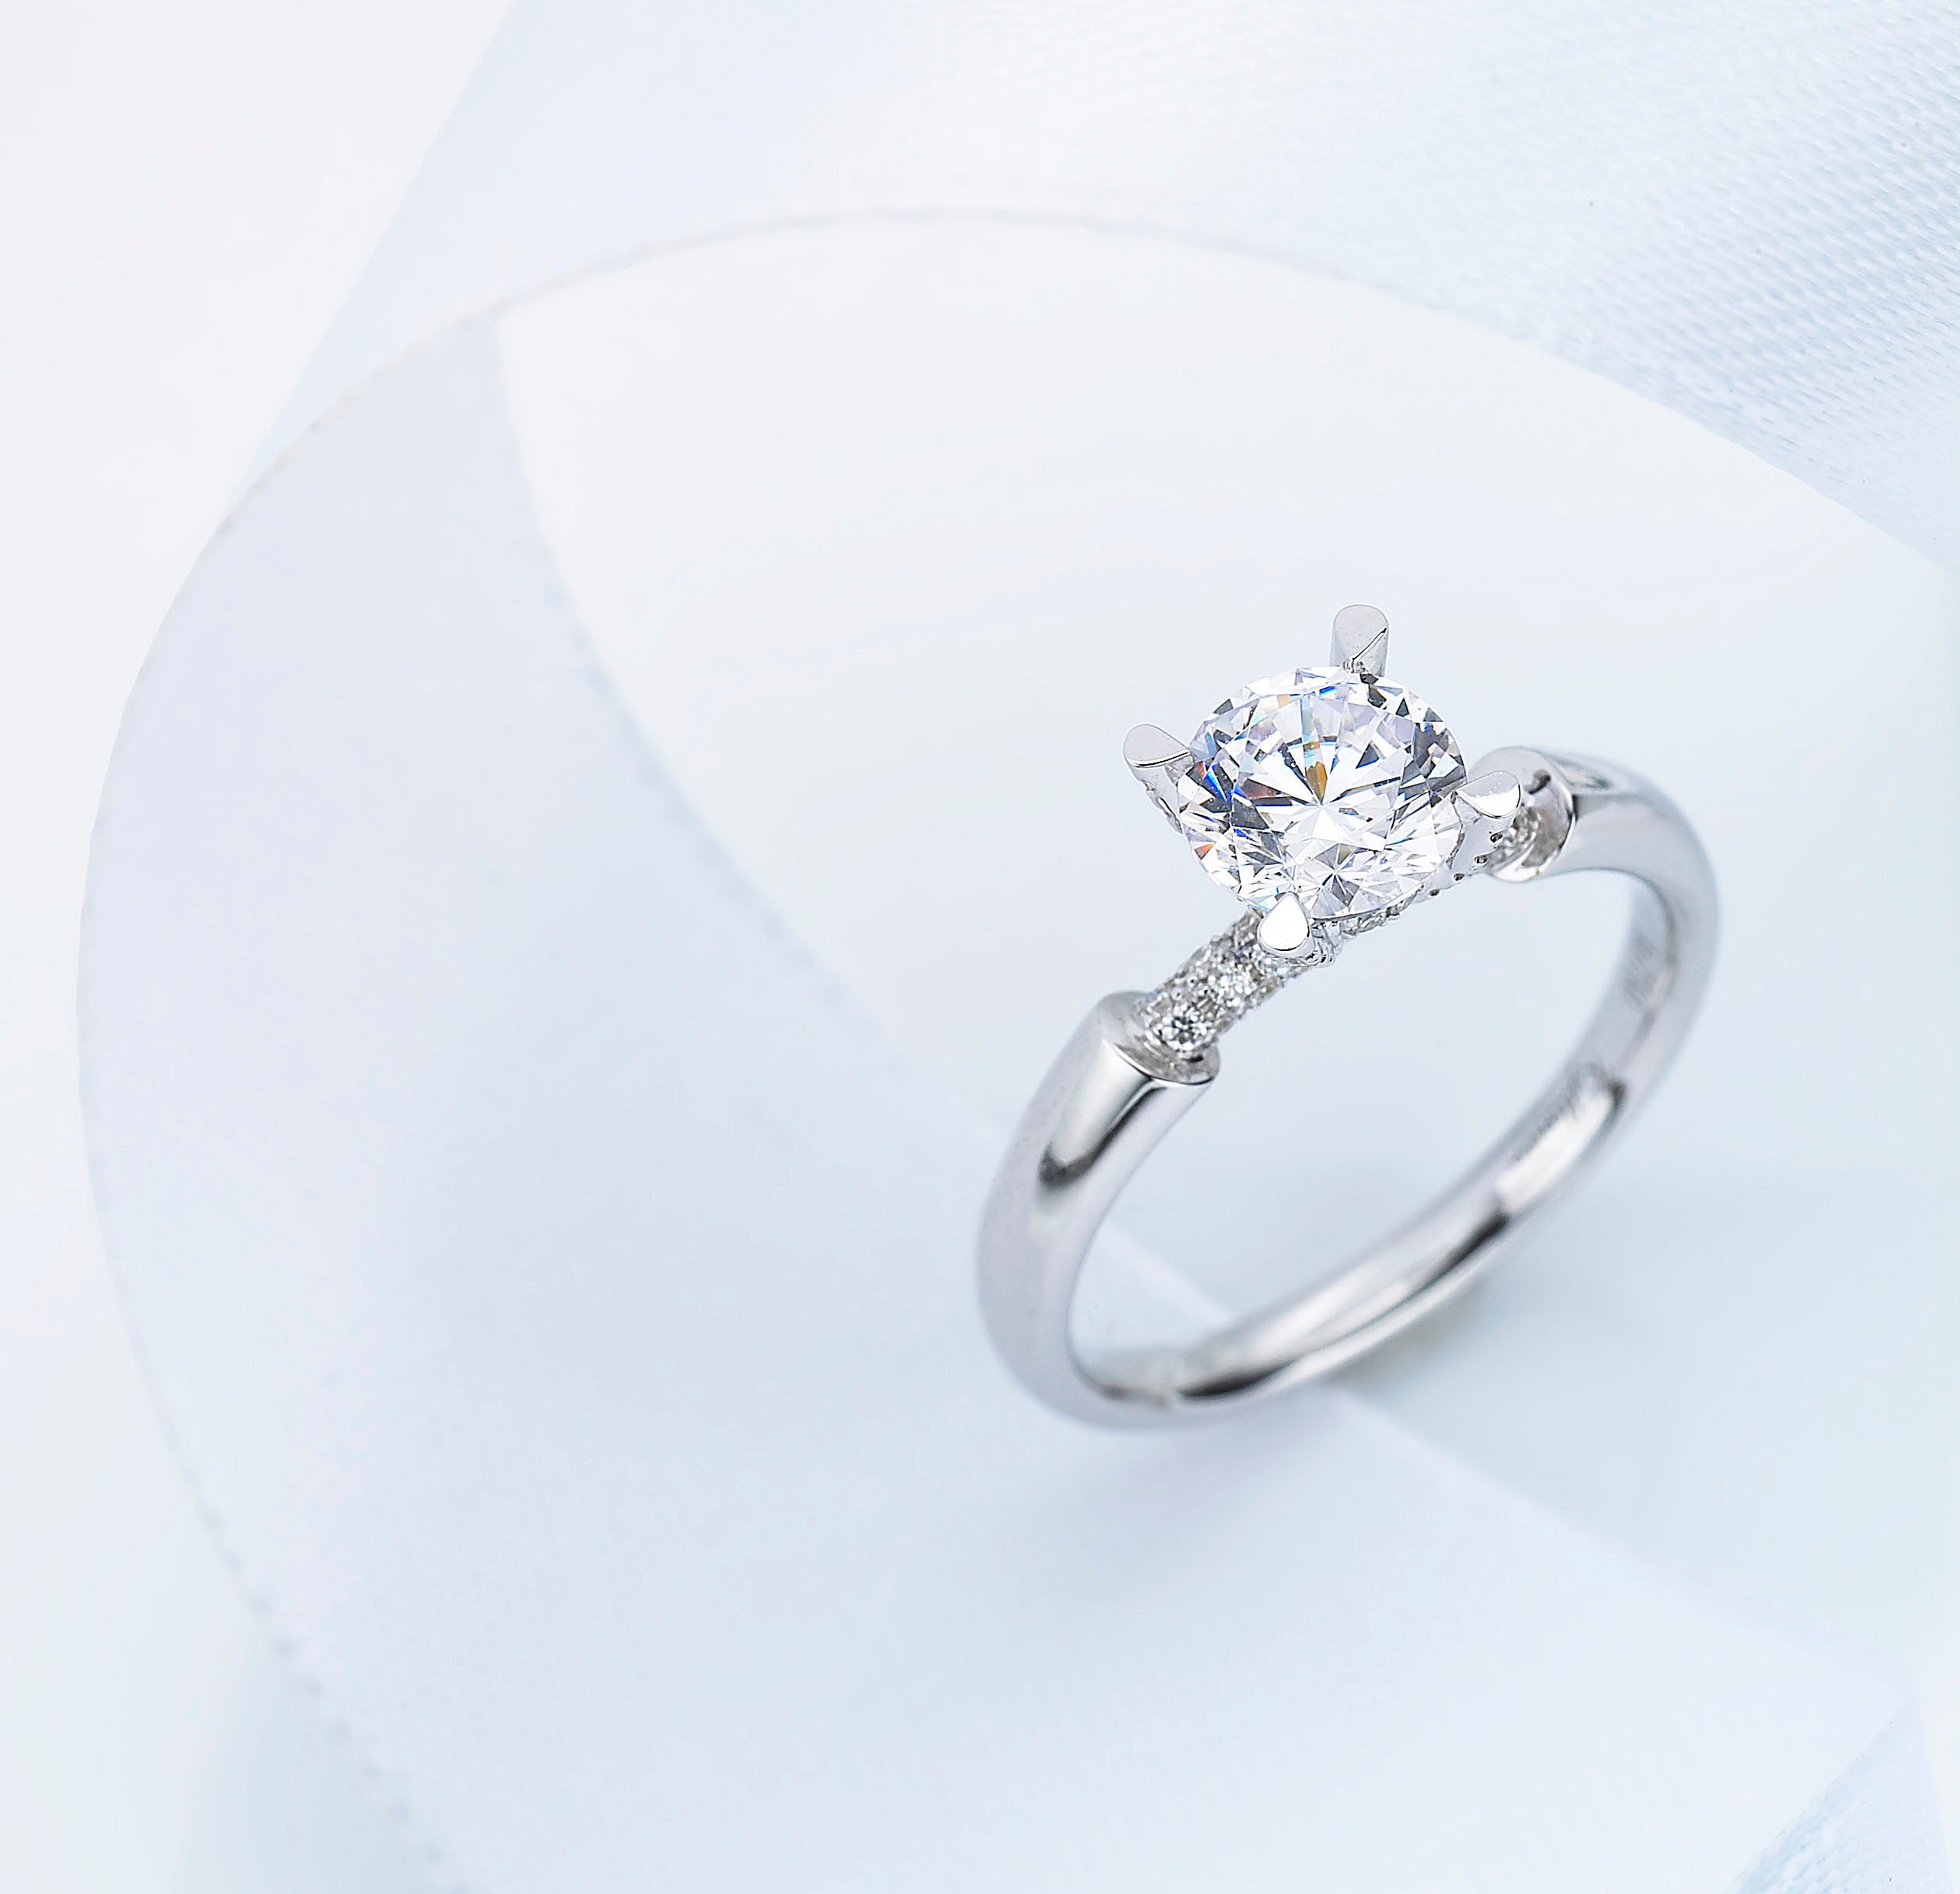 4 Diamond Engagement Ring Trends for 2019 - Kyllonen